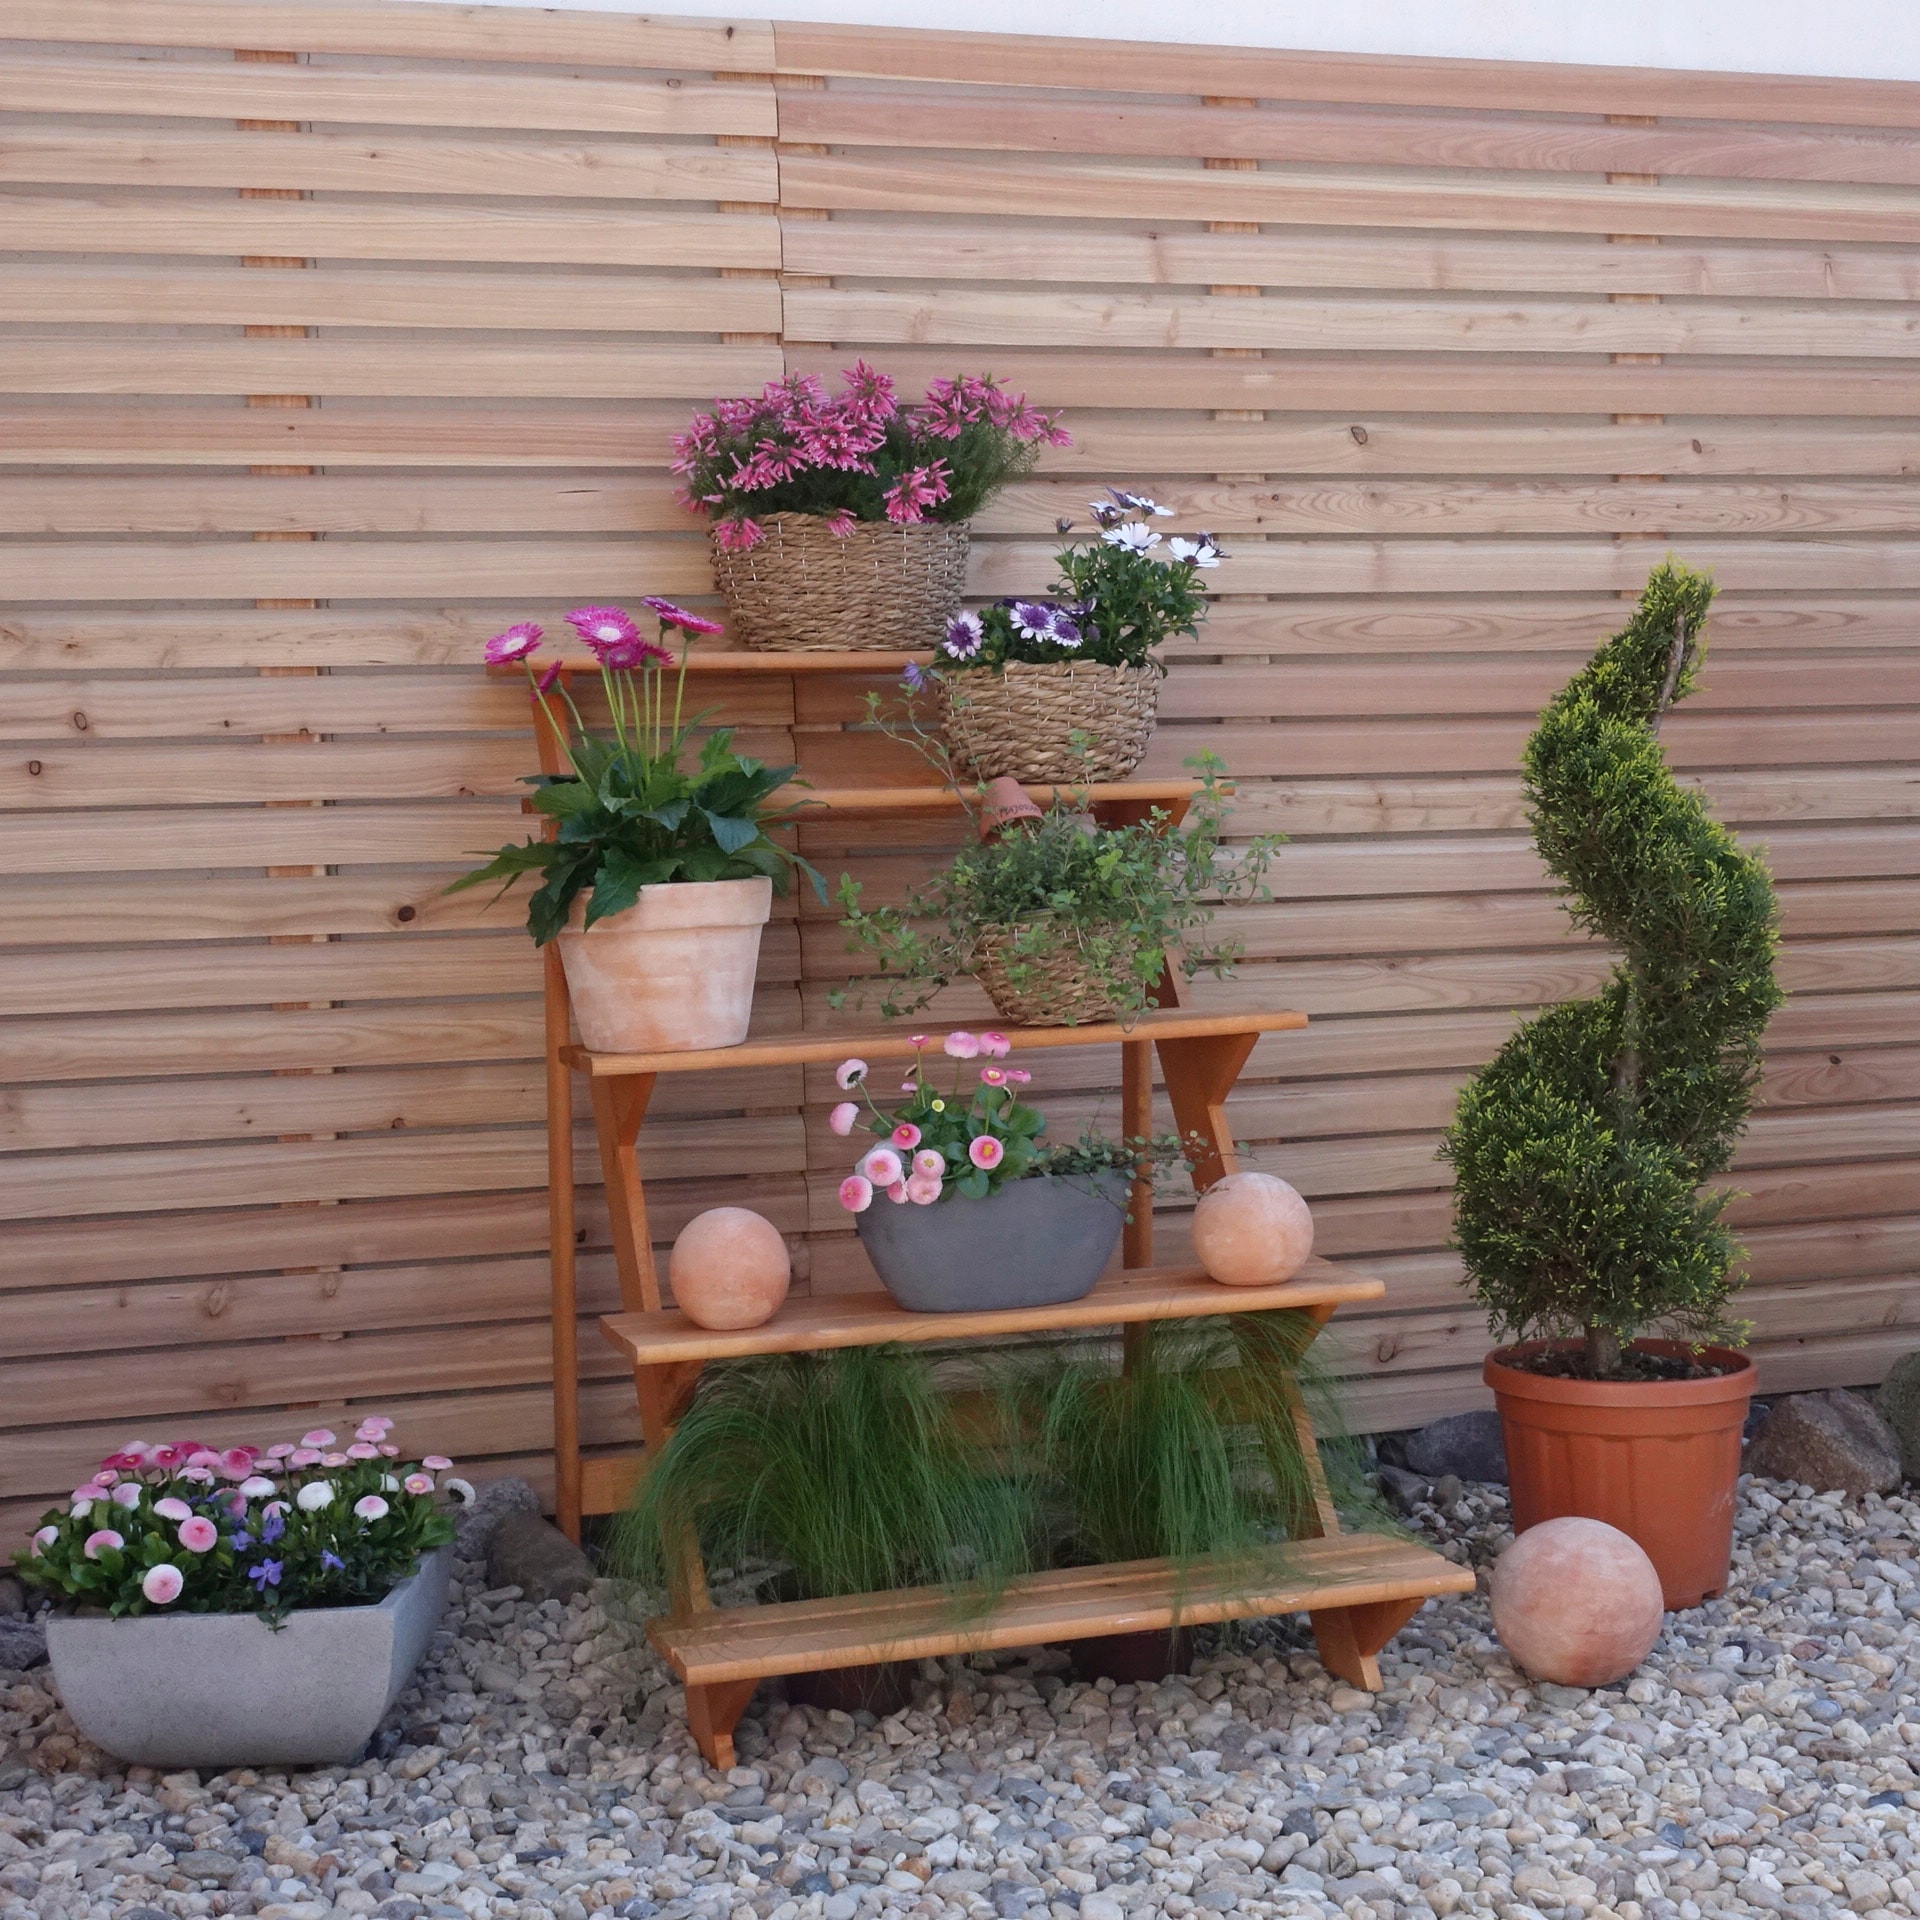 promadino Pflanzentreppe »Blumentreppe groß«, BxTxH: 78x100x109 cm online  kaufen